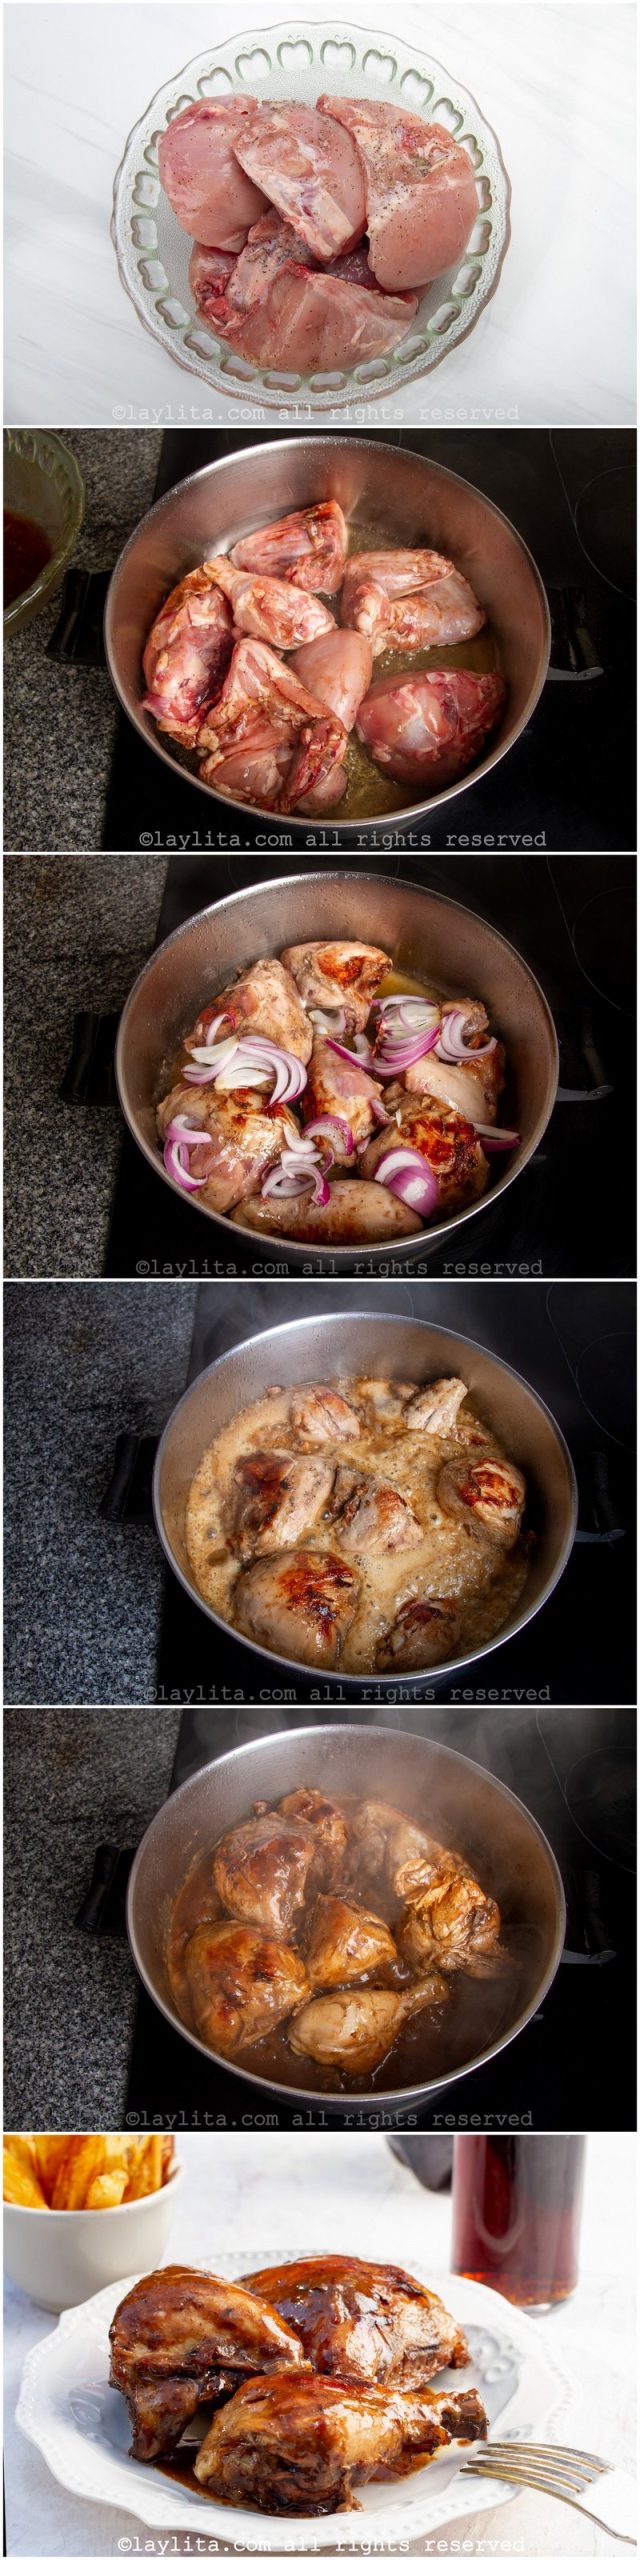 Preparación paso a paso del pollo a la coca cola